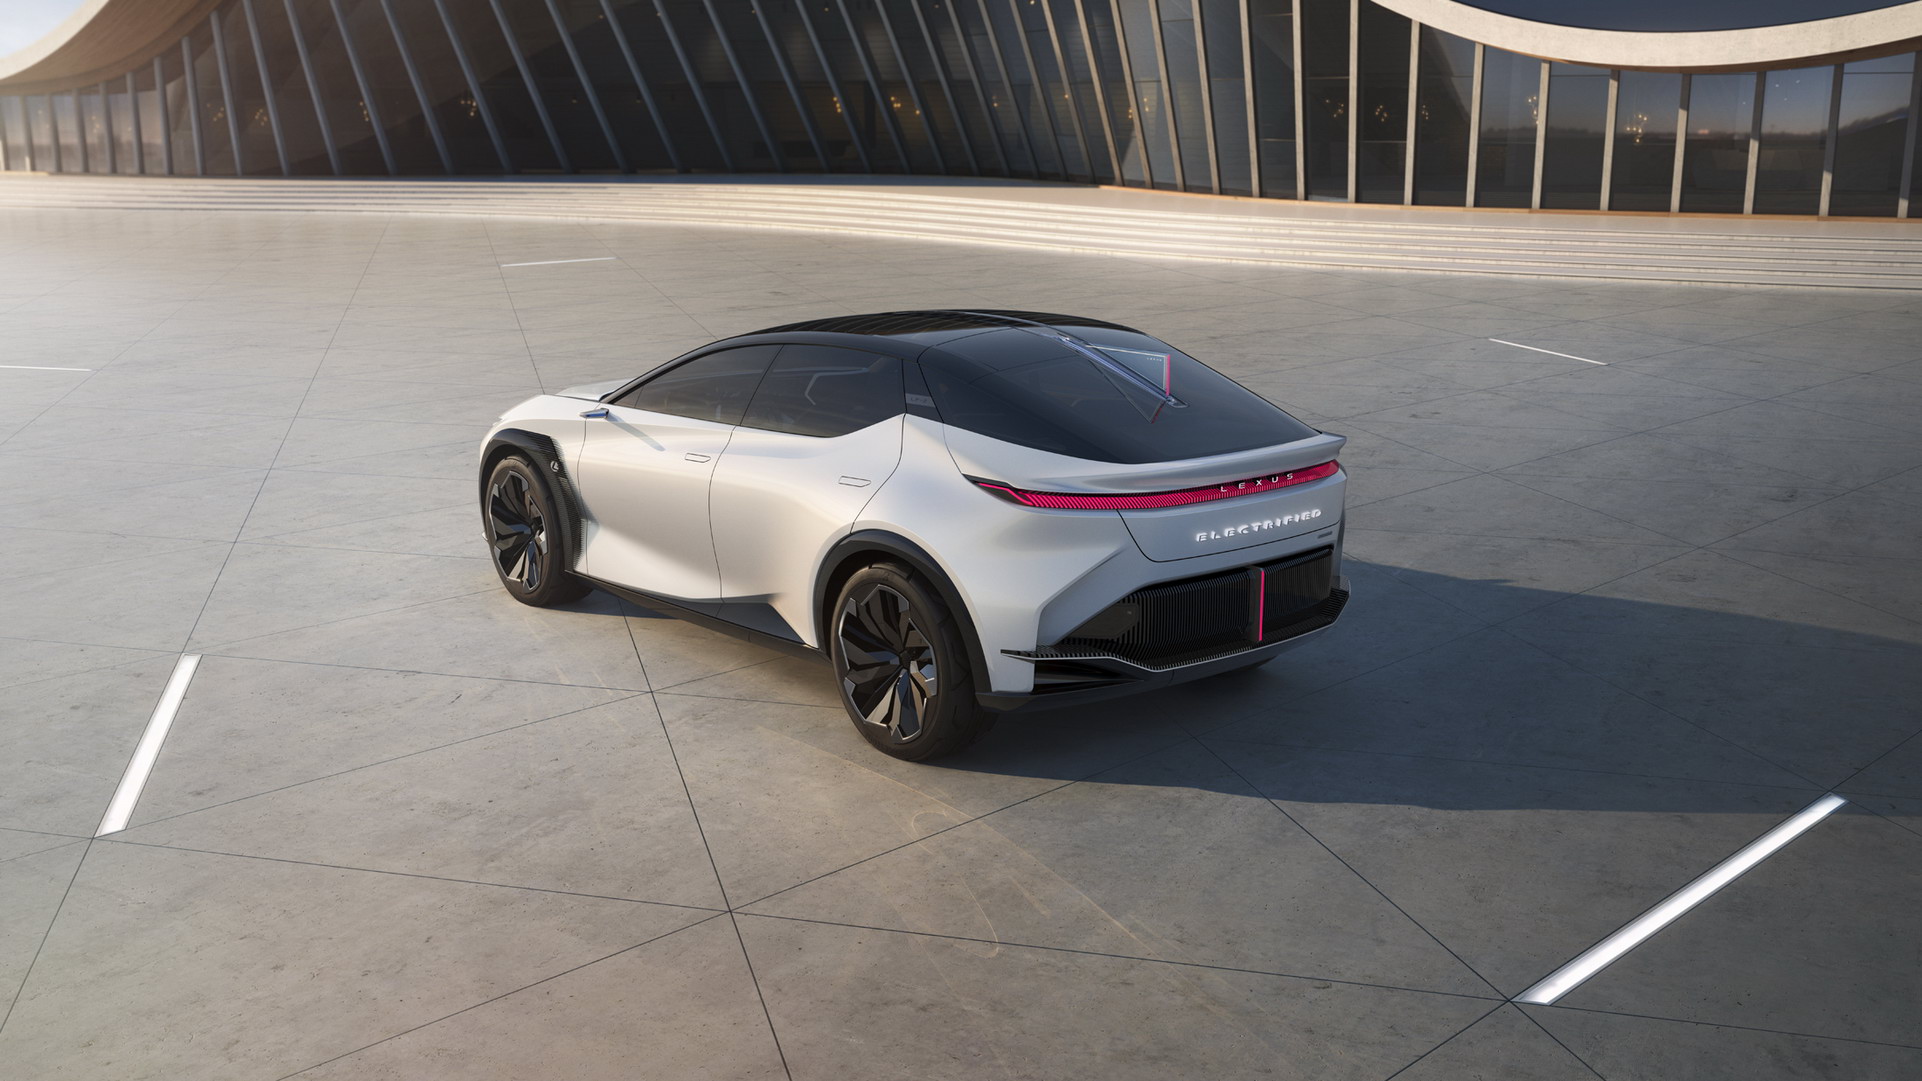 Xe Lexus hứa hẹn sẽ lái hay và tốc độ hơn trong tương lai - Ảnh 2.